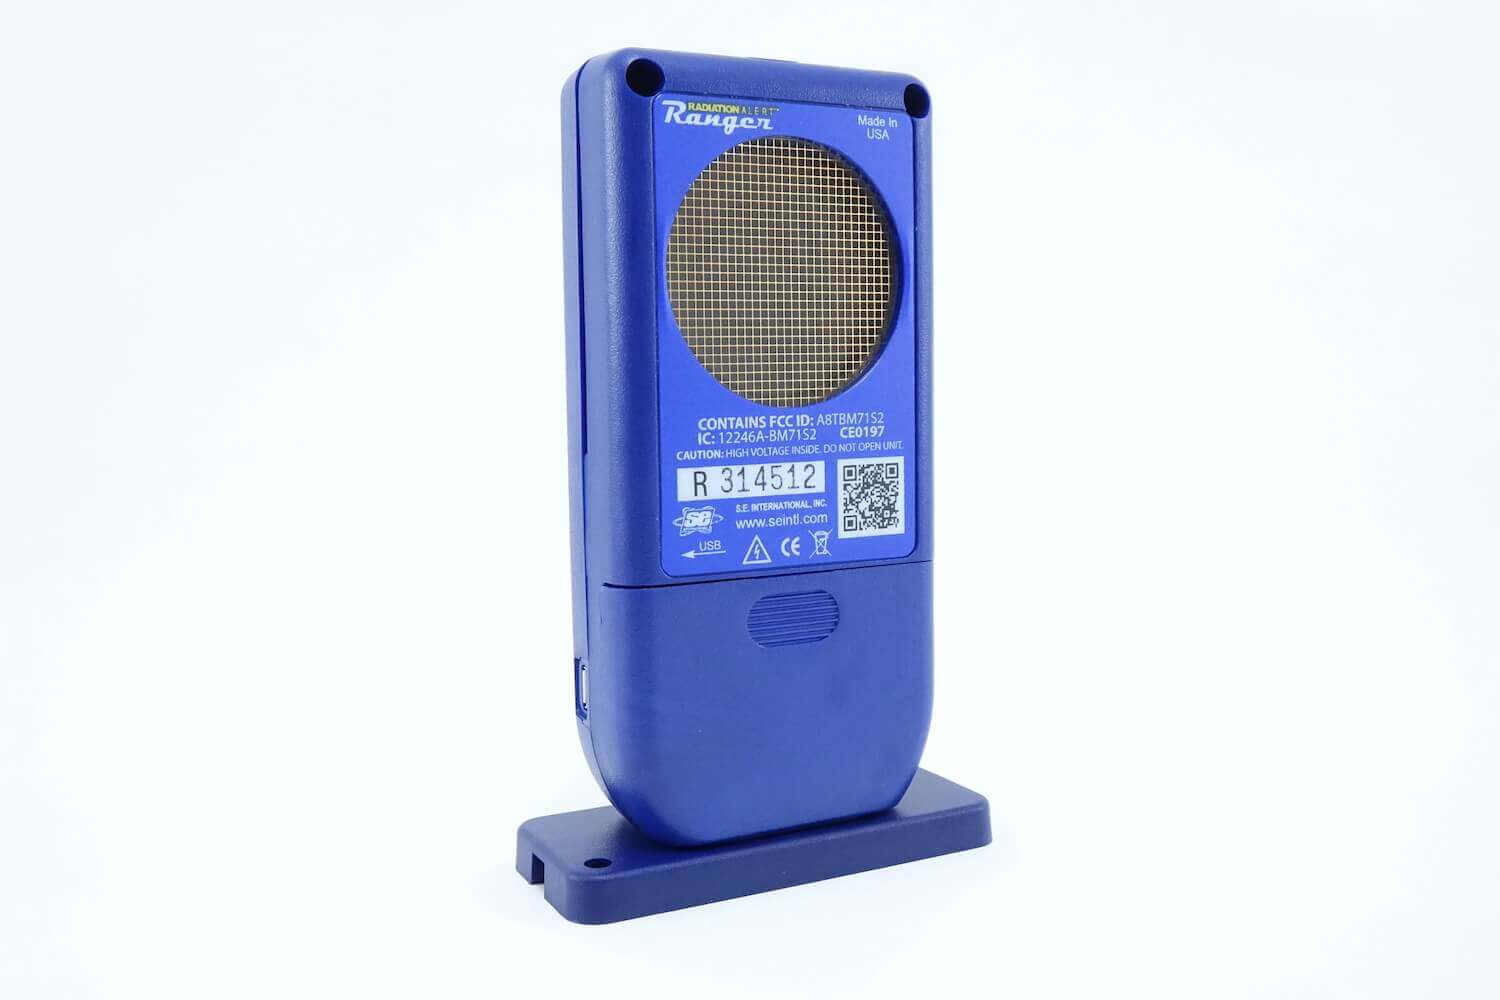 Radiation Alert Ranger Geigerzähler Mit LND7317 - EXPERT